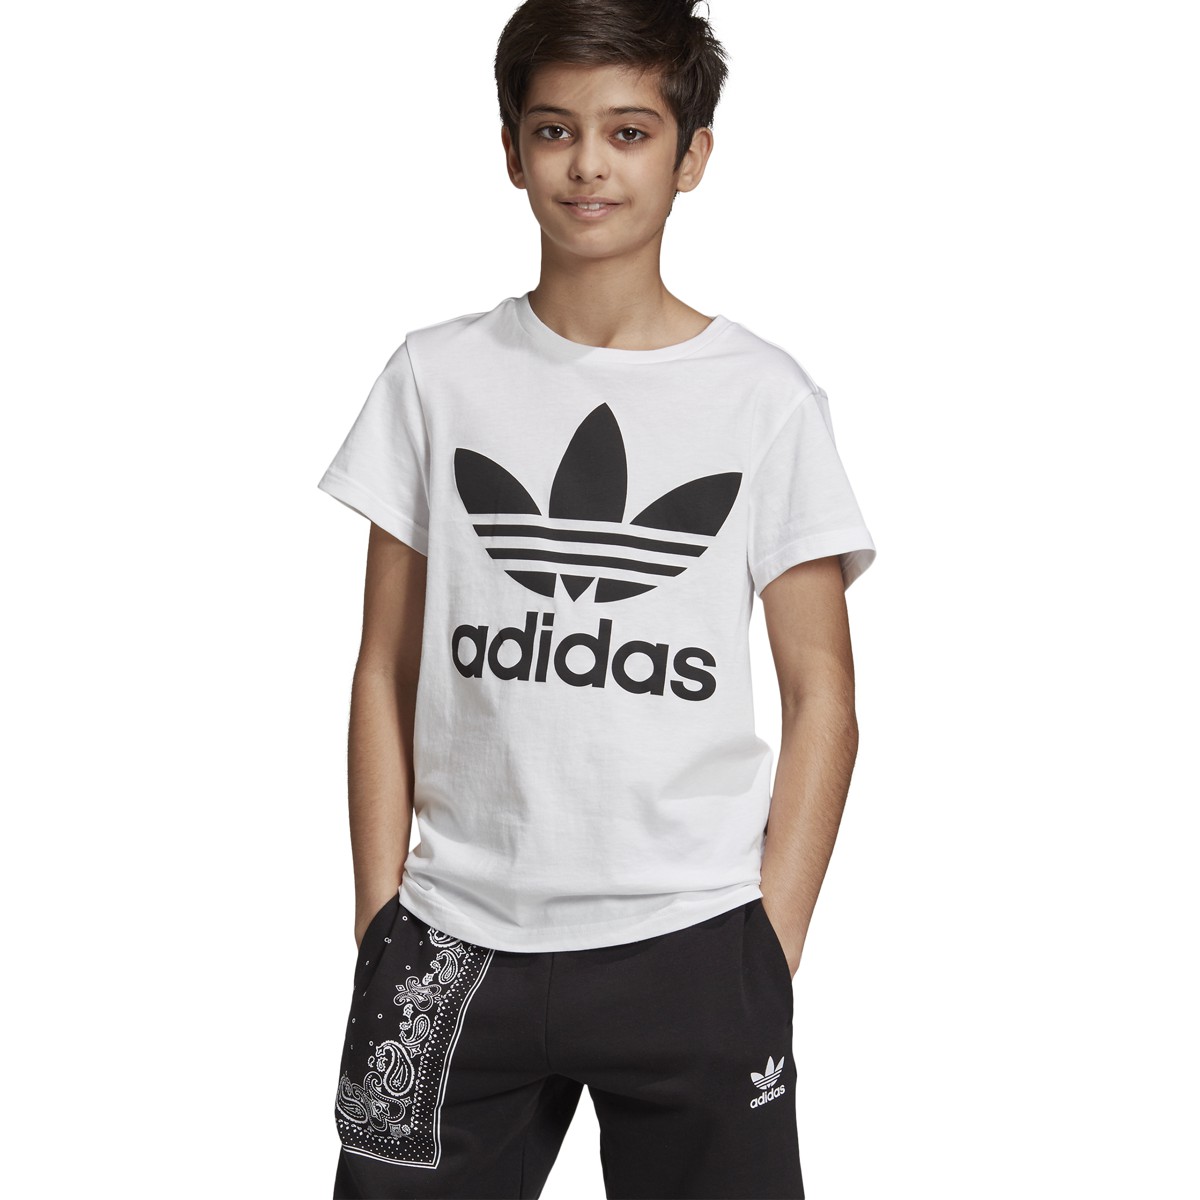 Adidas Originals Trefoil Kids T-Shirt 